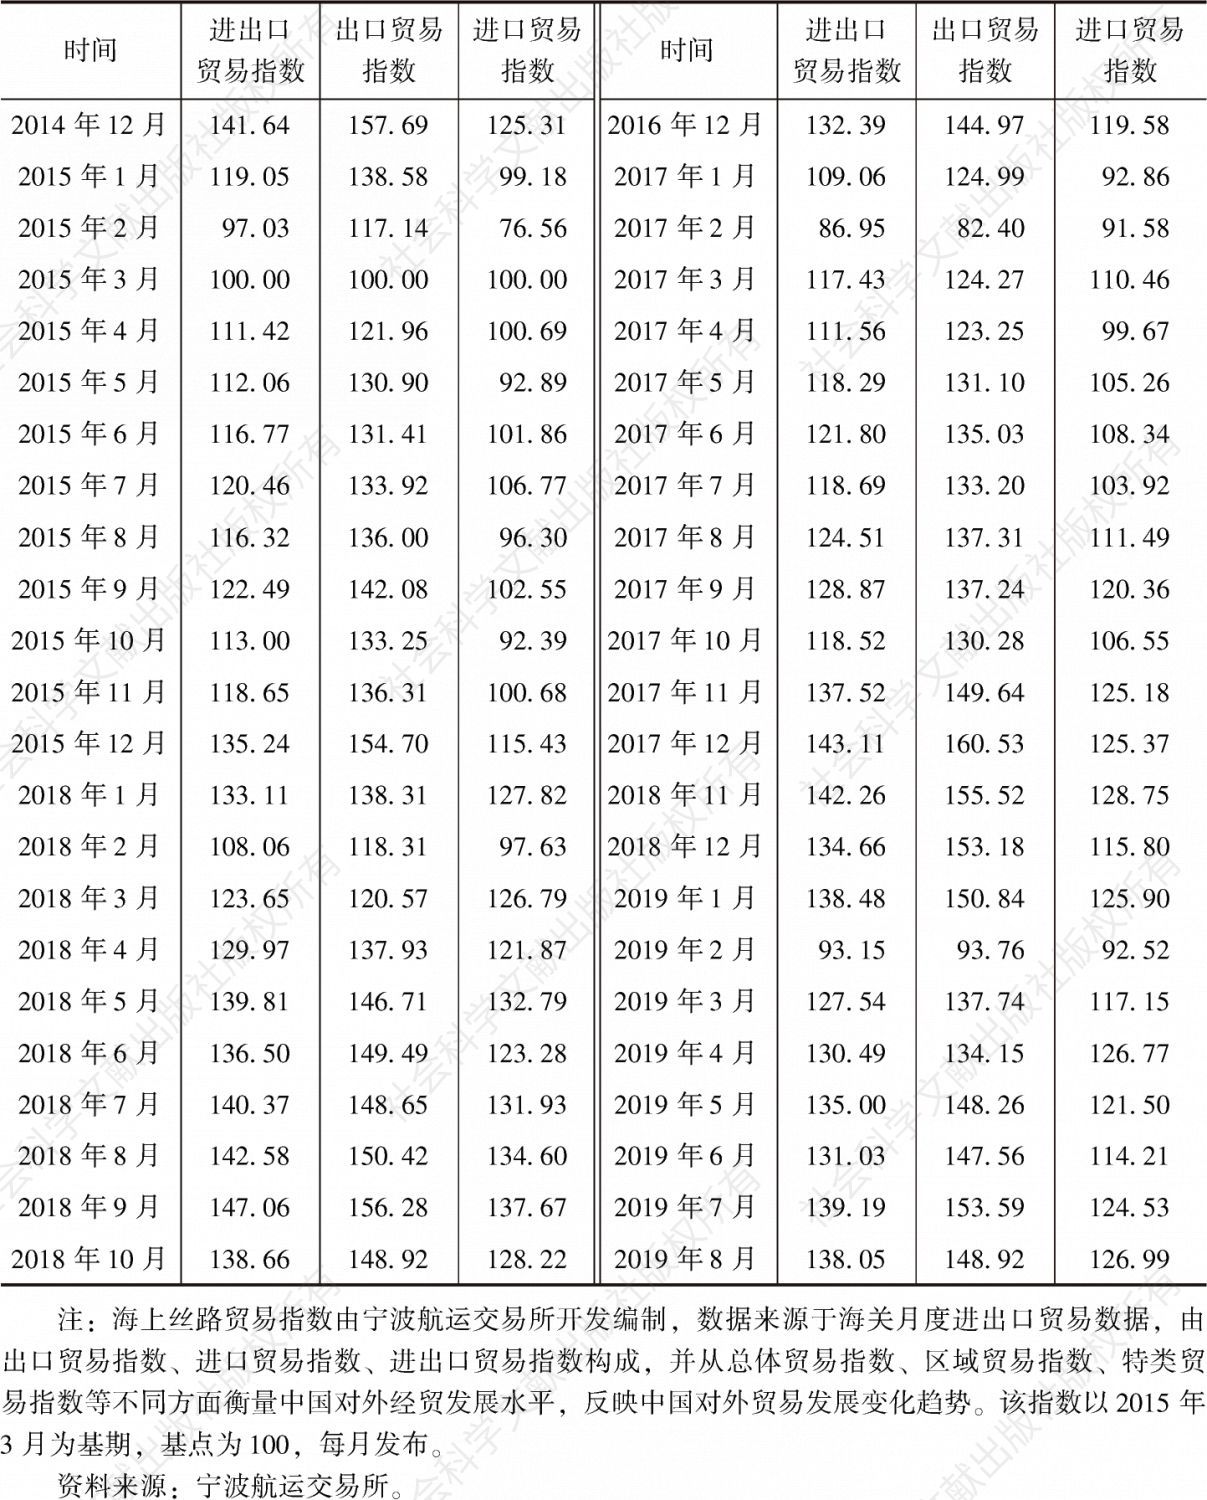 表1-1 2014年1月至2019年8月海上丝路贸易指数-续表